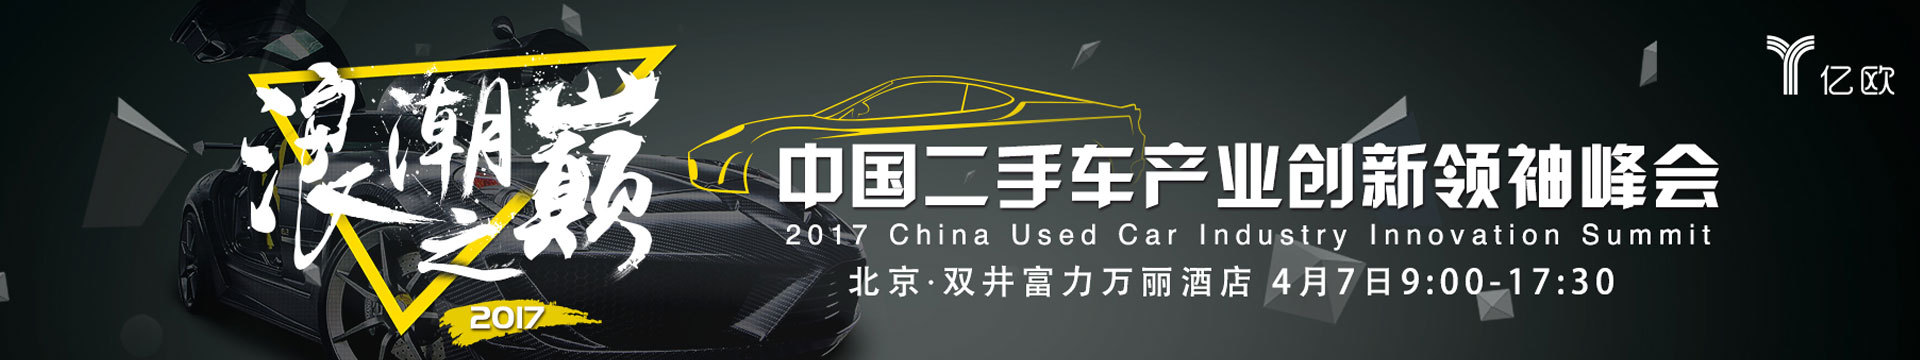 2017中国二手车产业创新领袖峰会